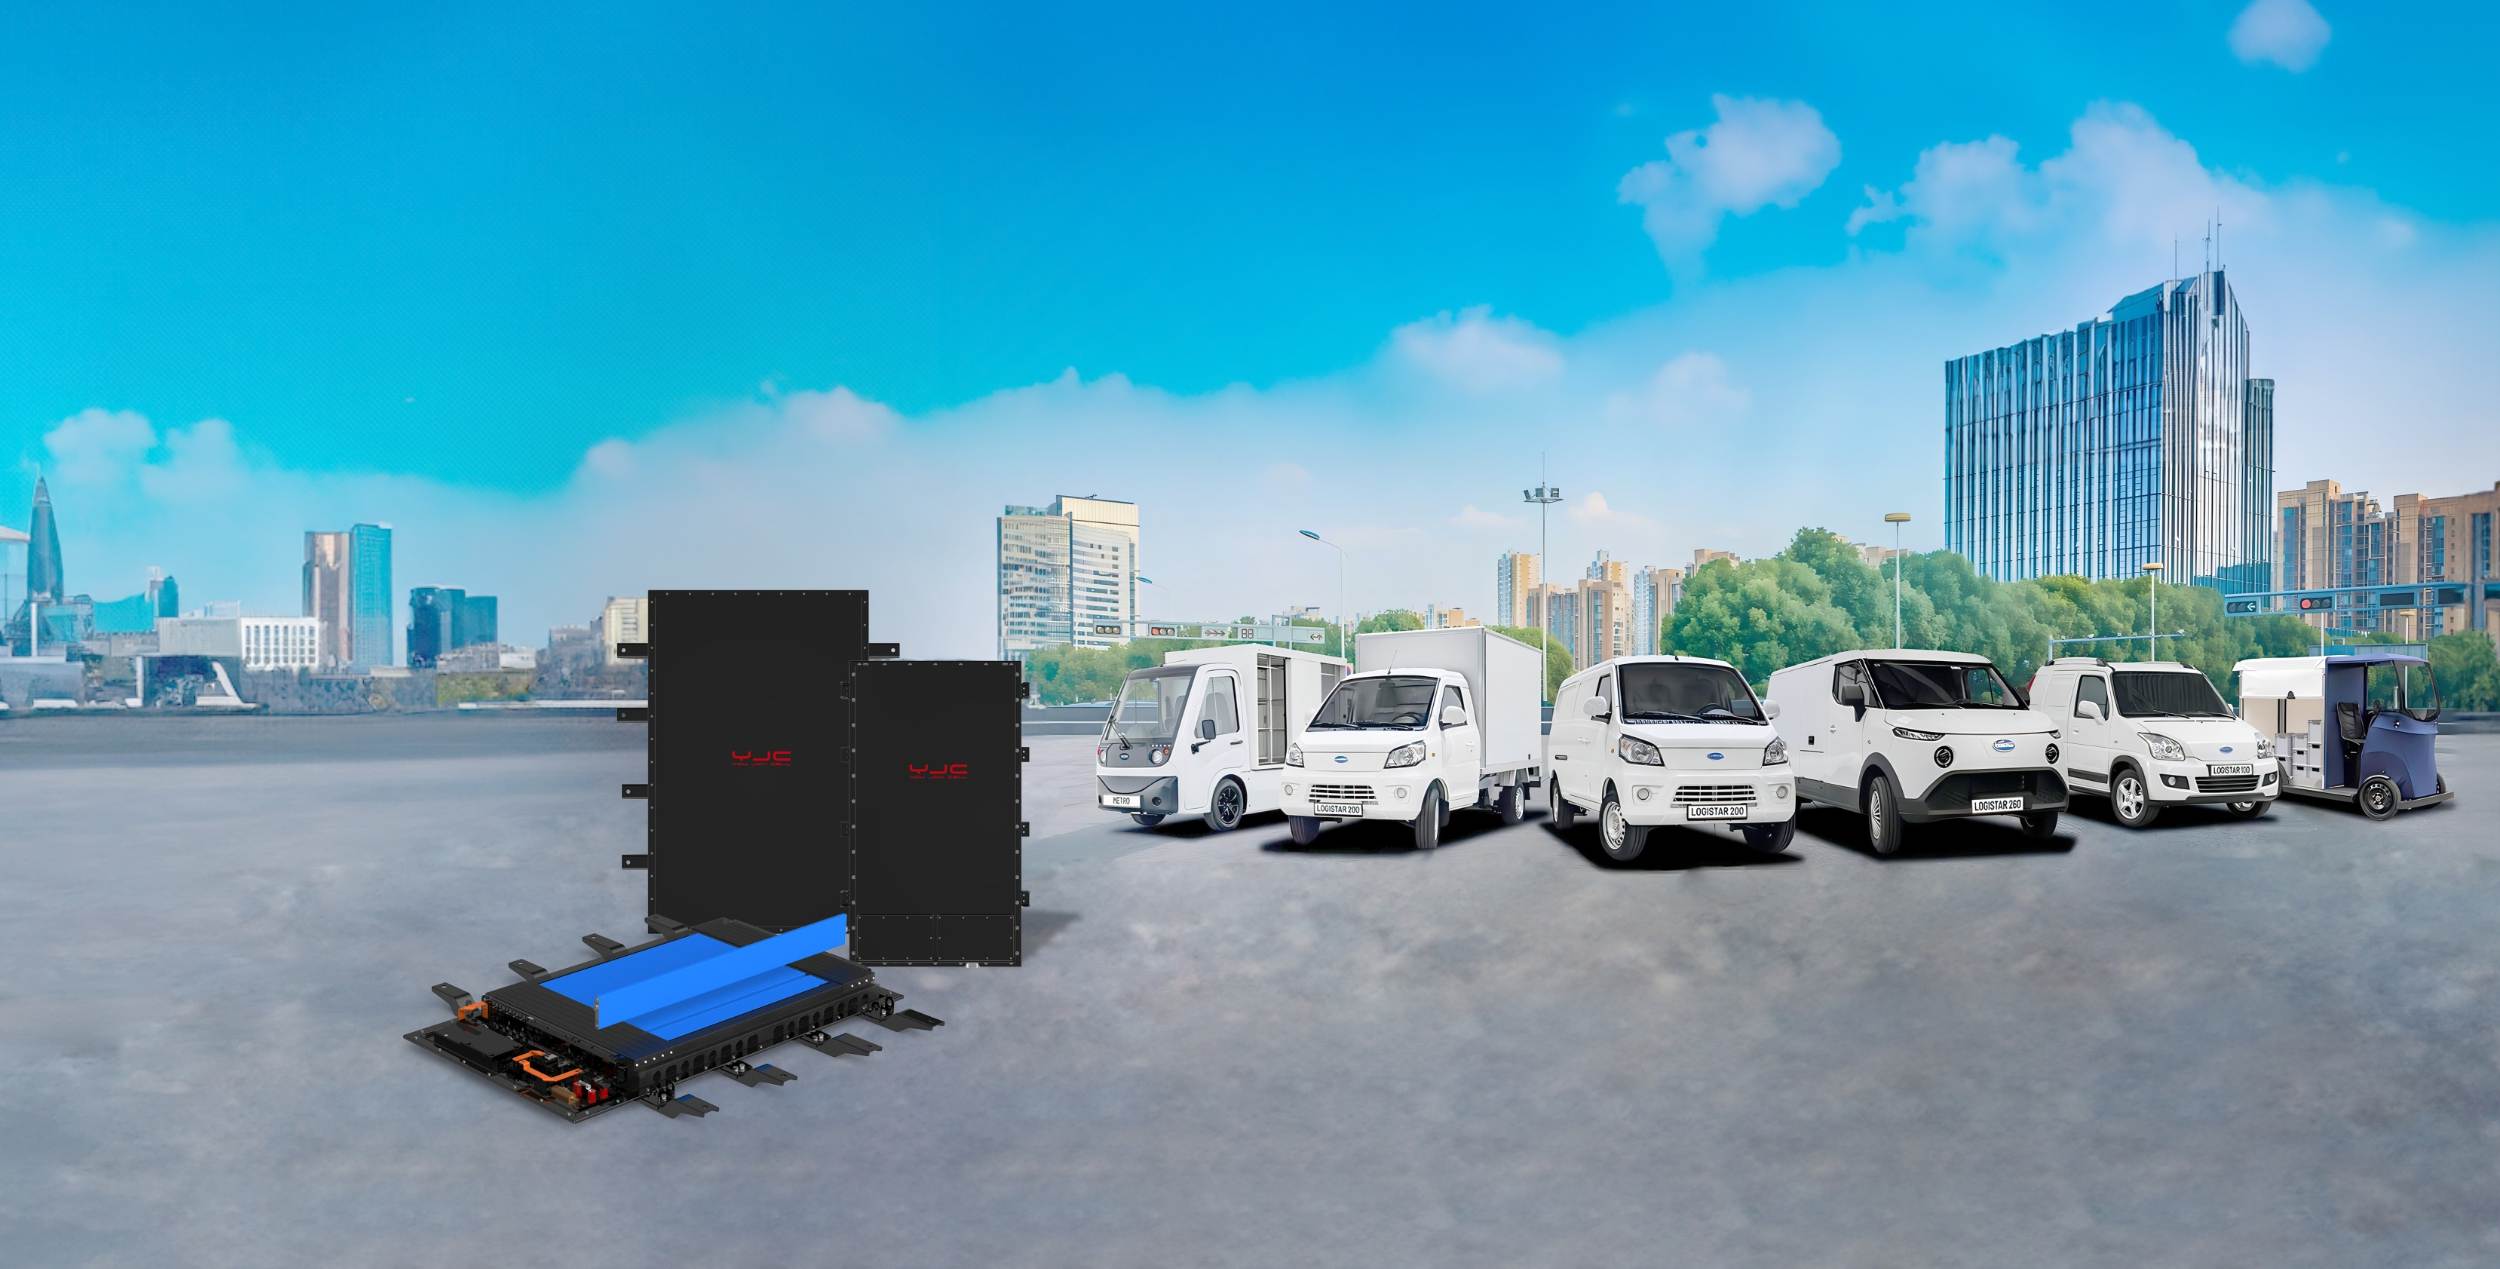 Site logistics vehicle batteries